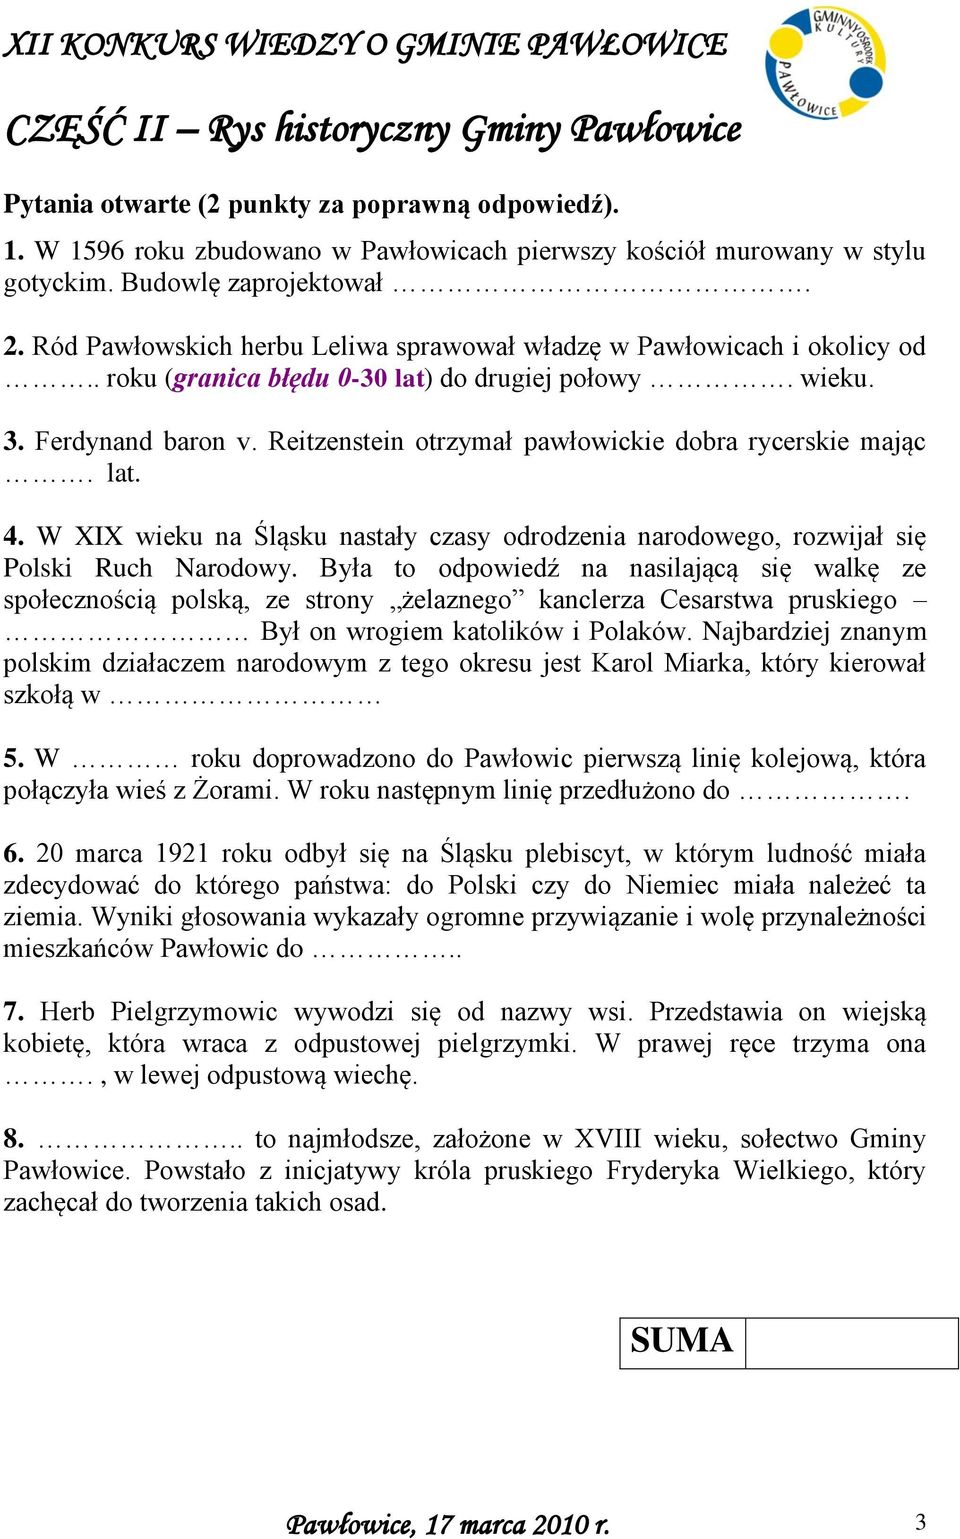 Reitzenstein otrzymał pawłowickie dobra rycerskie mając. lat. 4. W XIX wieku na Śląsku nastały czasy odrodzenia narodowego, rozwijał się Polski Ruch Narodowy.